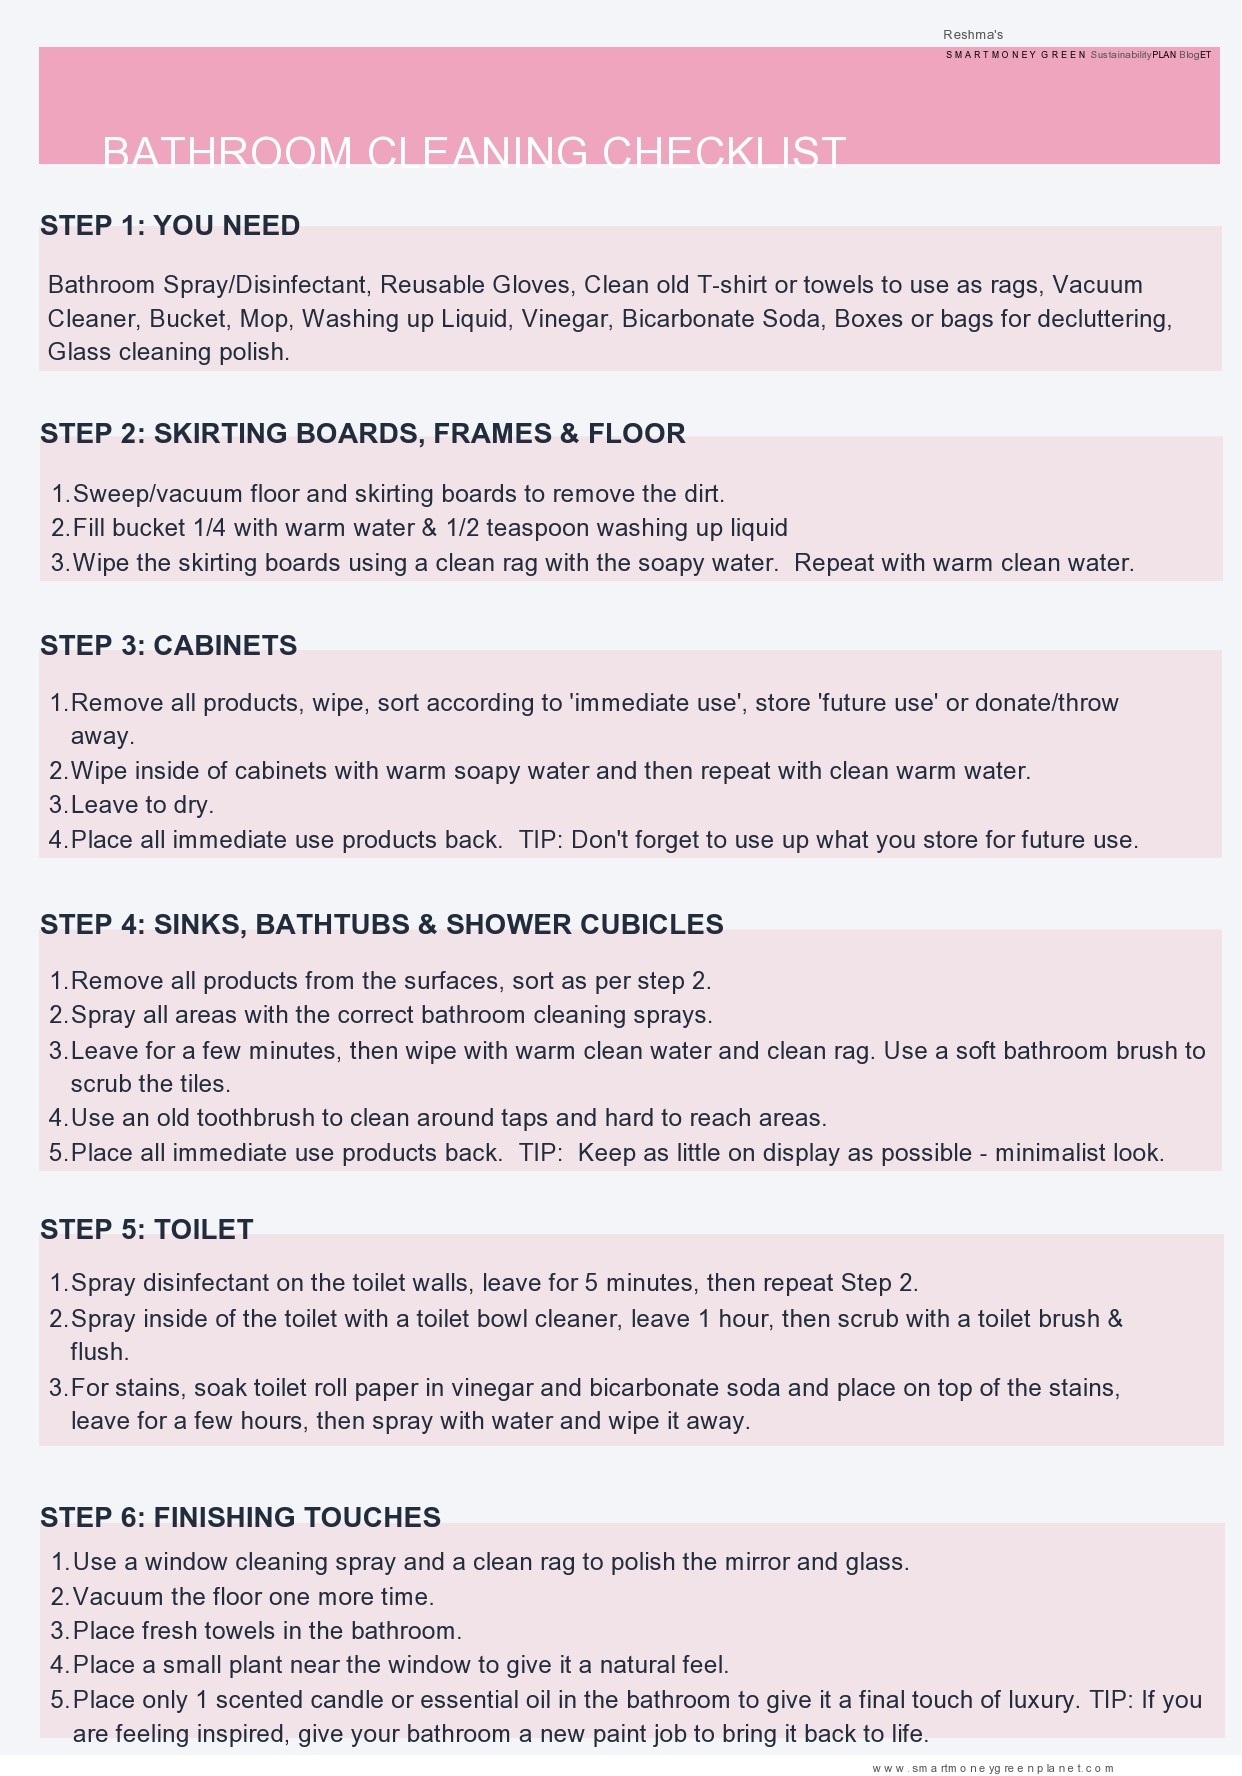 Free bathroom cleaning checklist 06